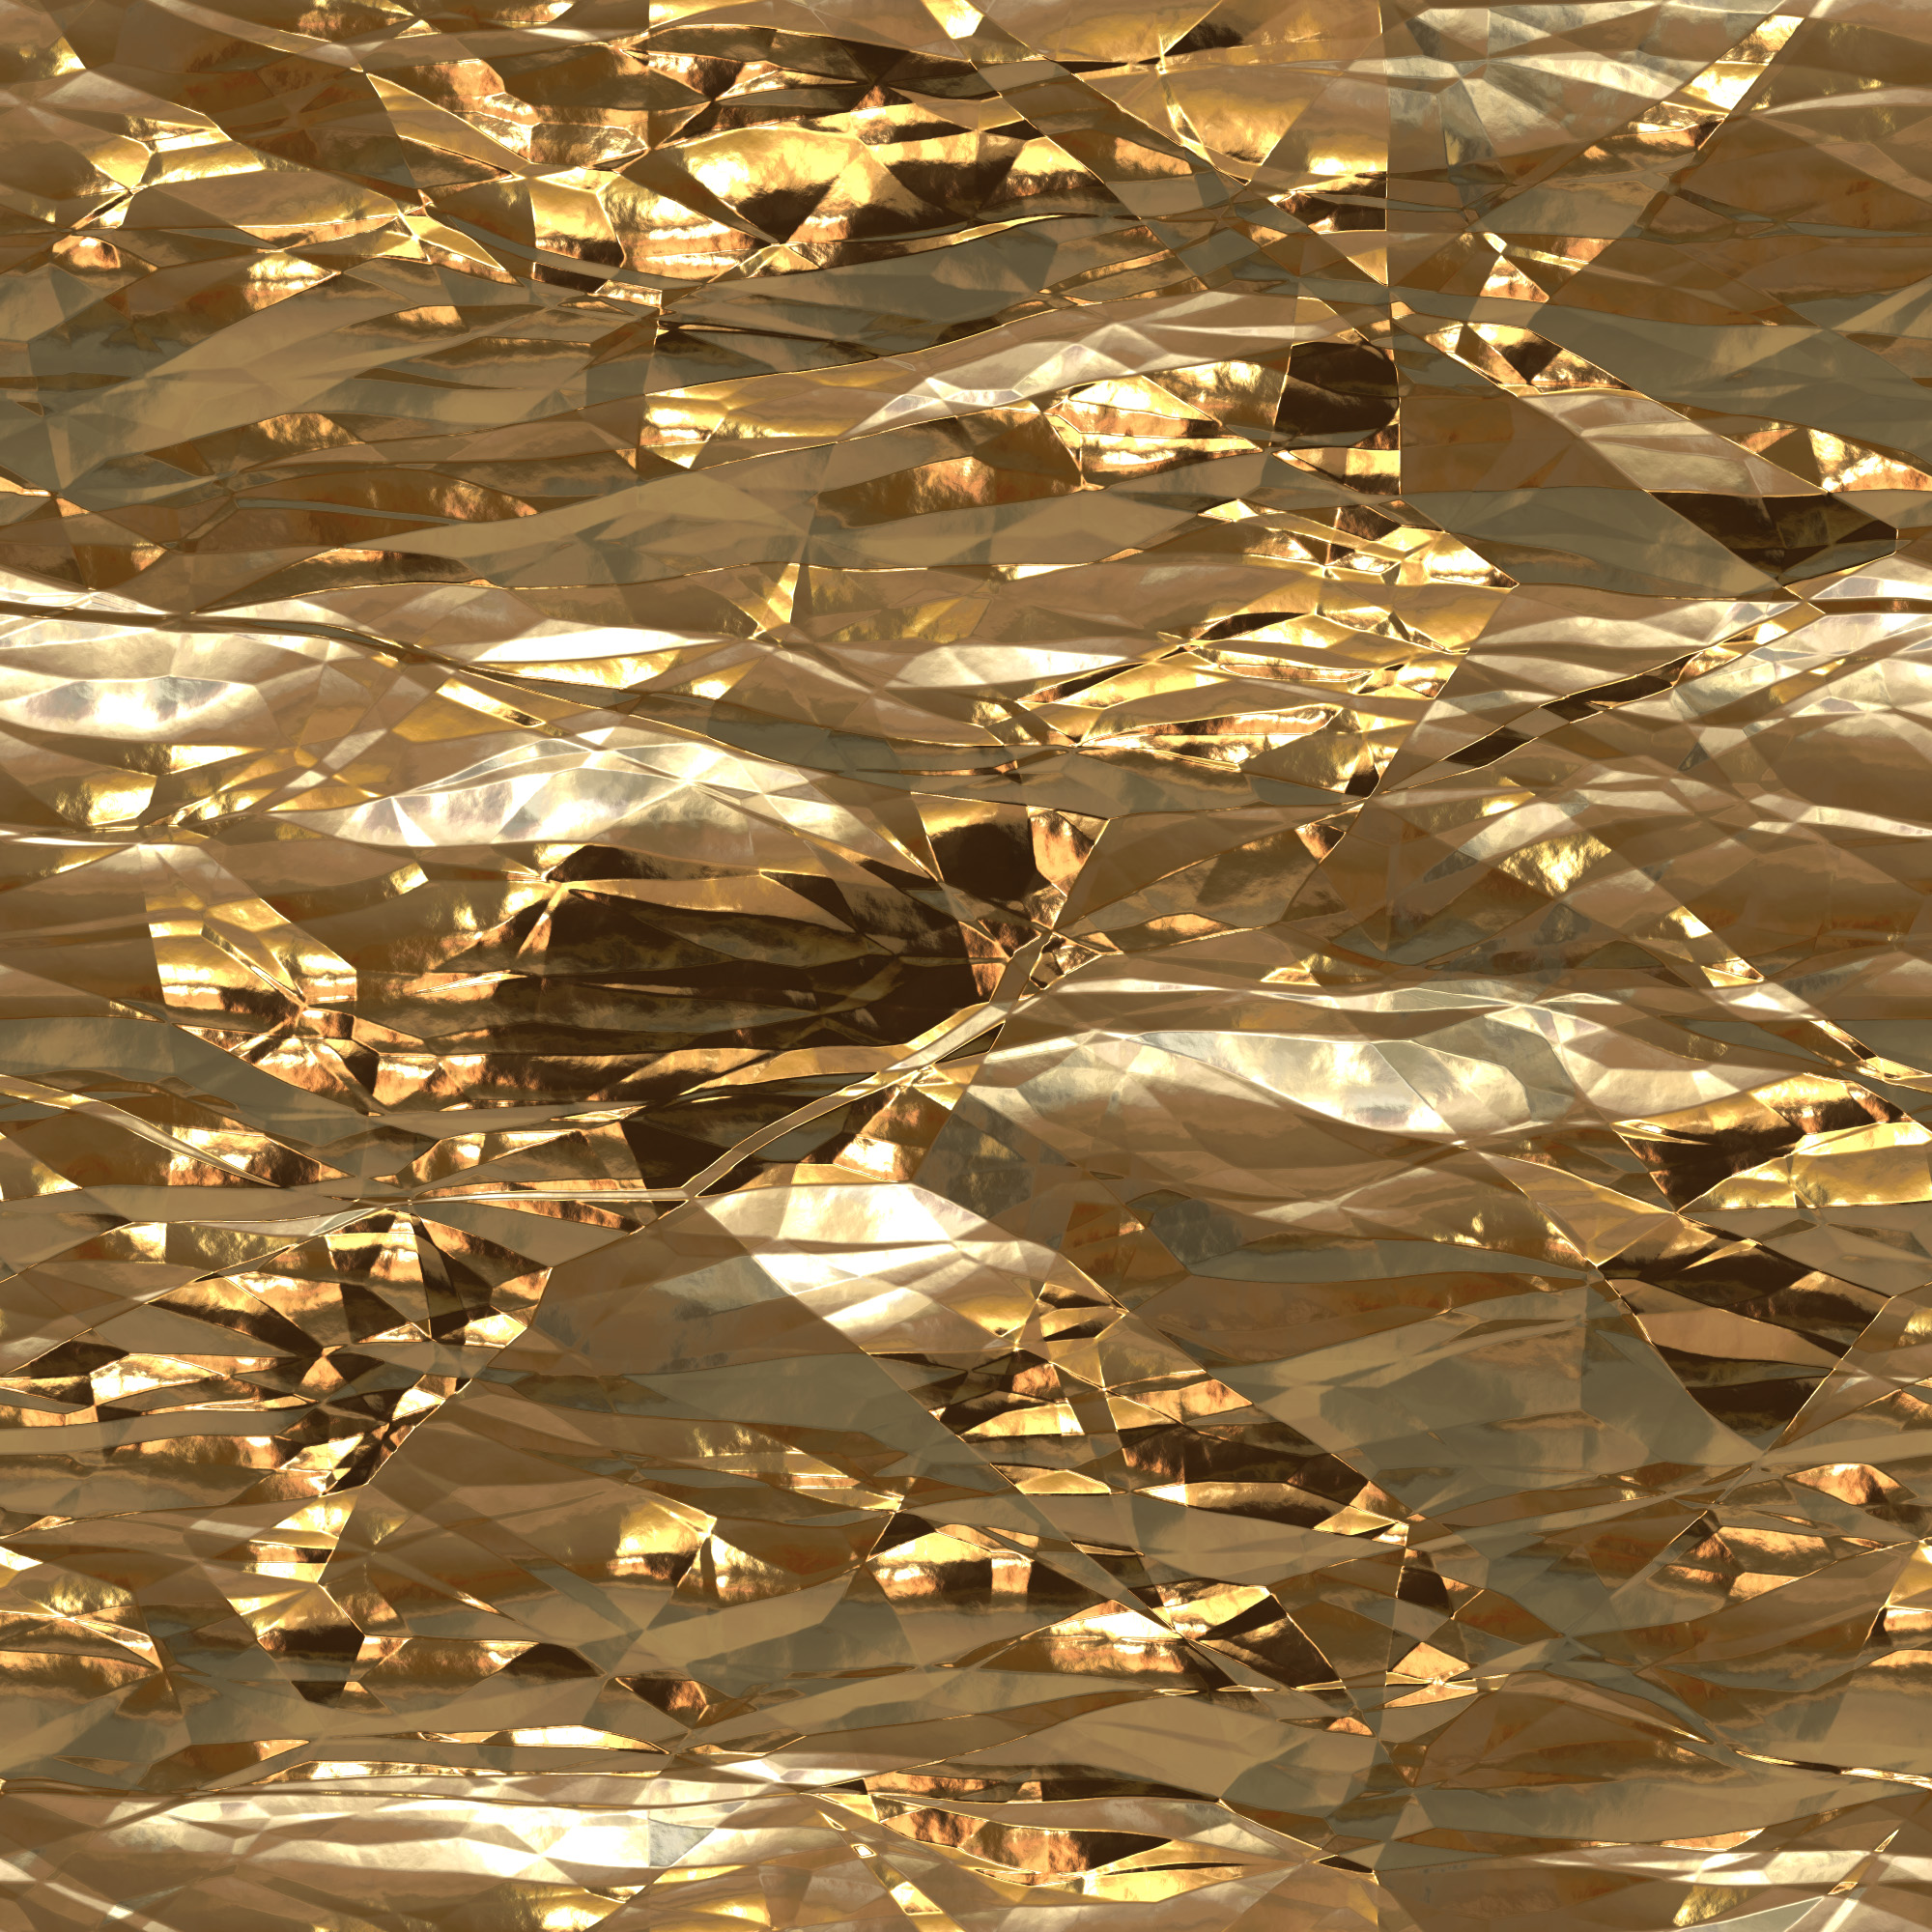 Shiny Gold Texture